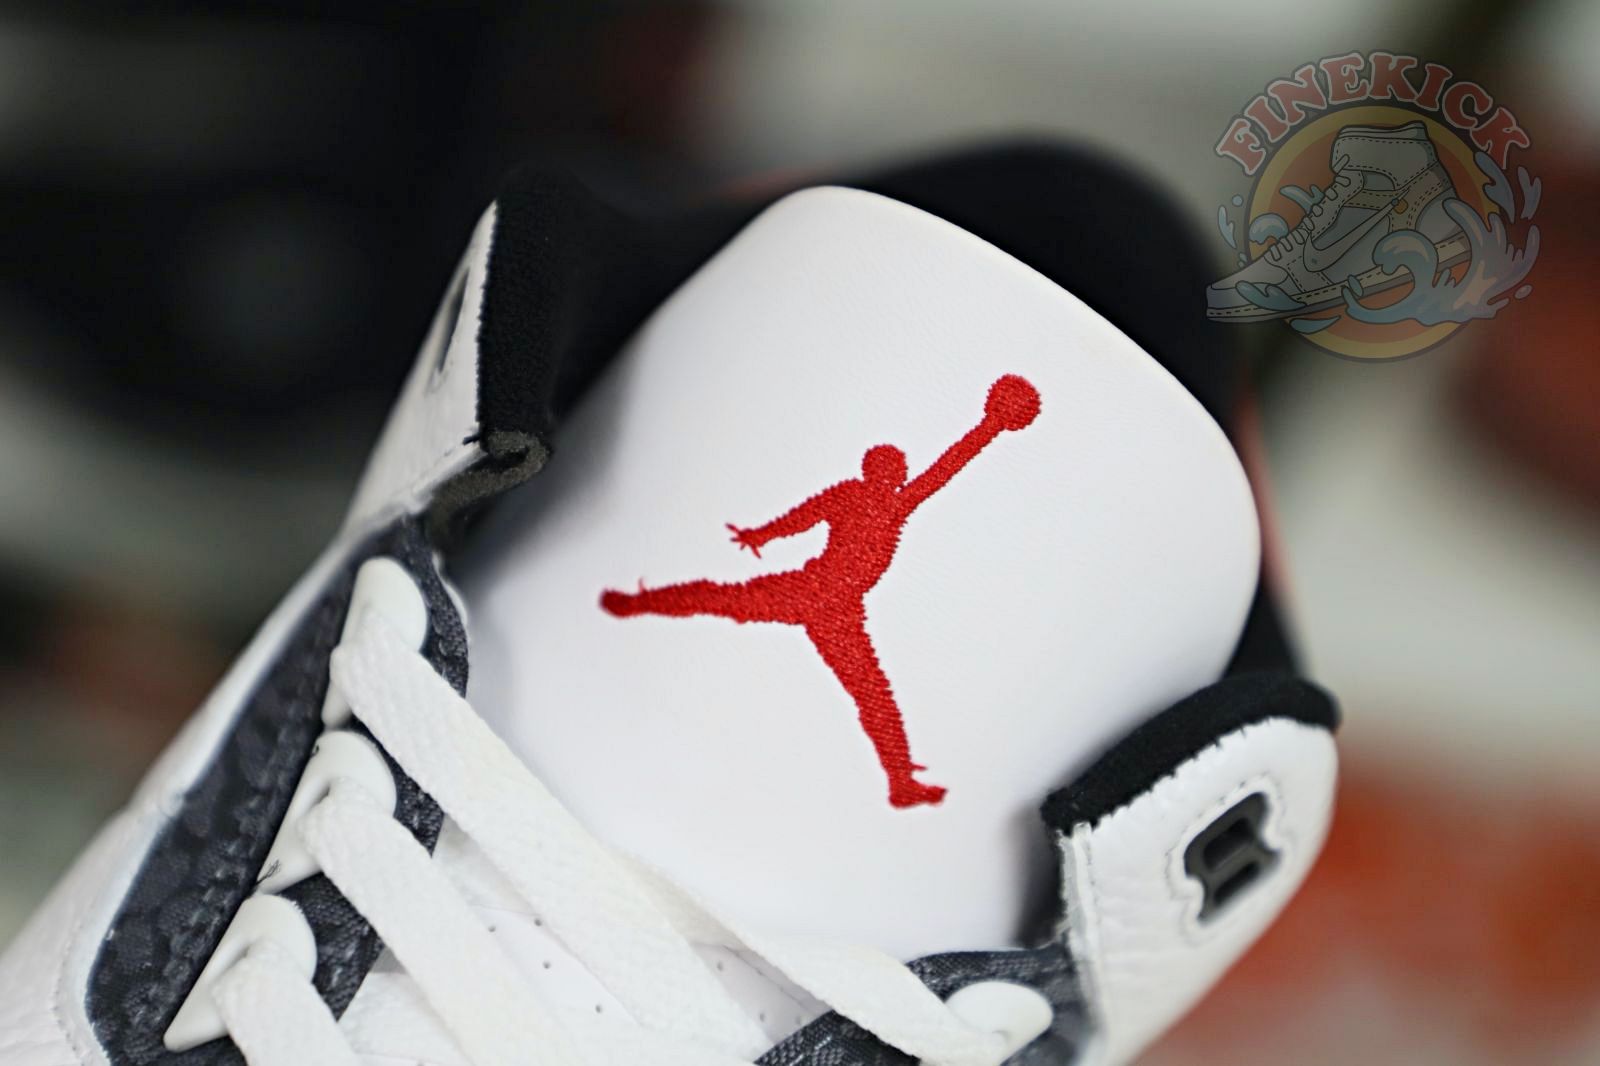 Jordan Air Jordan 3 se-t jp denimfre red